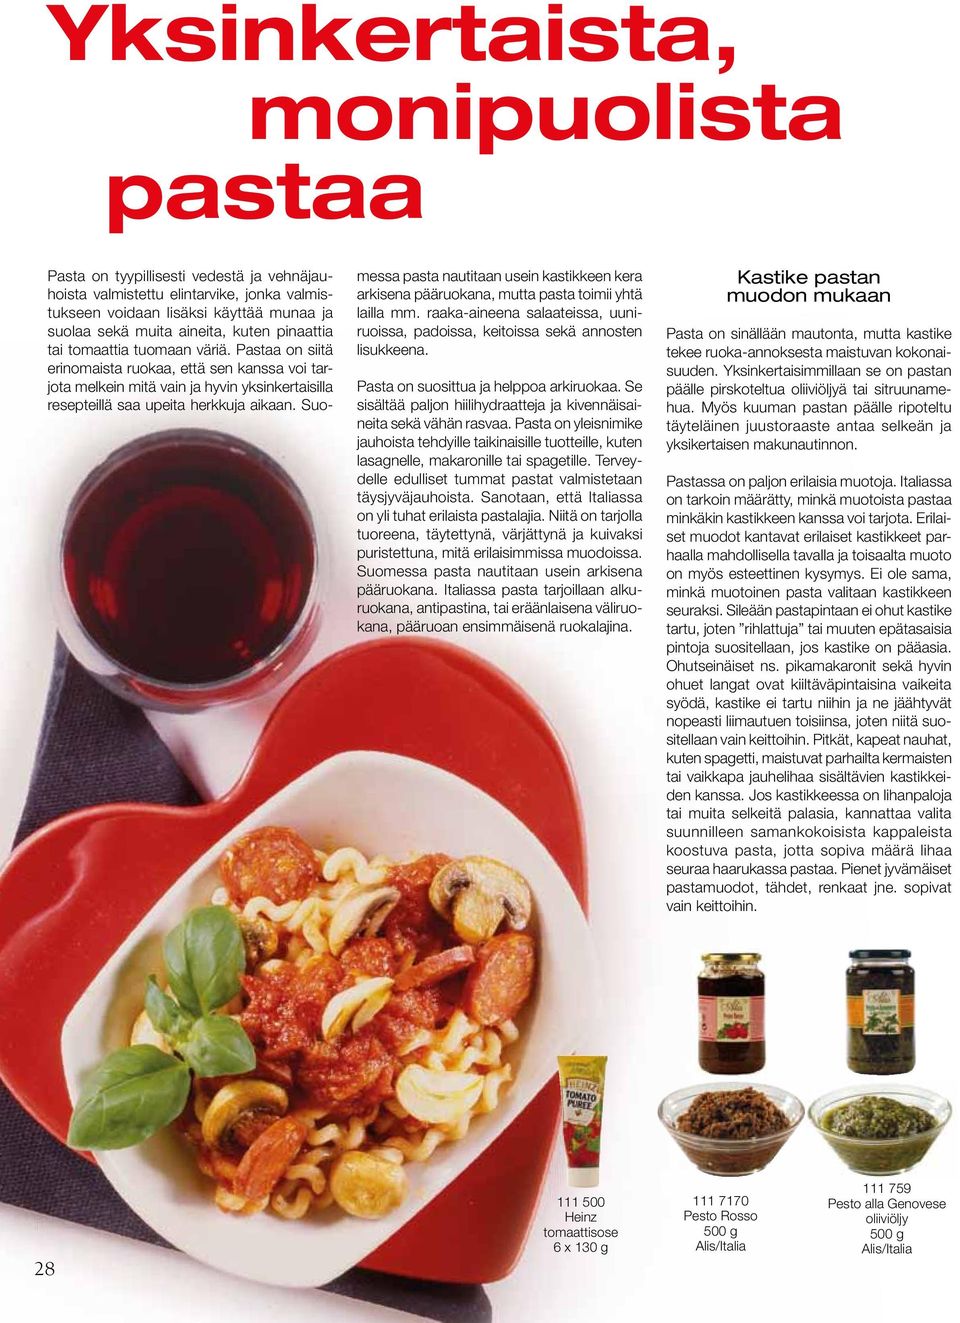 Suomessa pasta nautitaan usein kastikkeen kera arkisena pääruokana, mutta pasta toimii yhtä lailla mm. raaka-aineena salaateissa, uuniruoissa, padoissa, keitoissa sekä annosten lisukkeena.